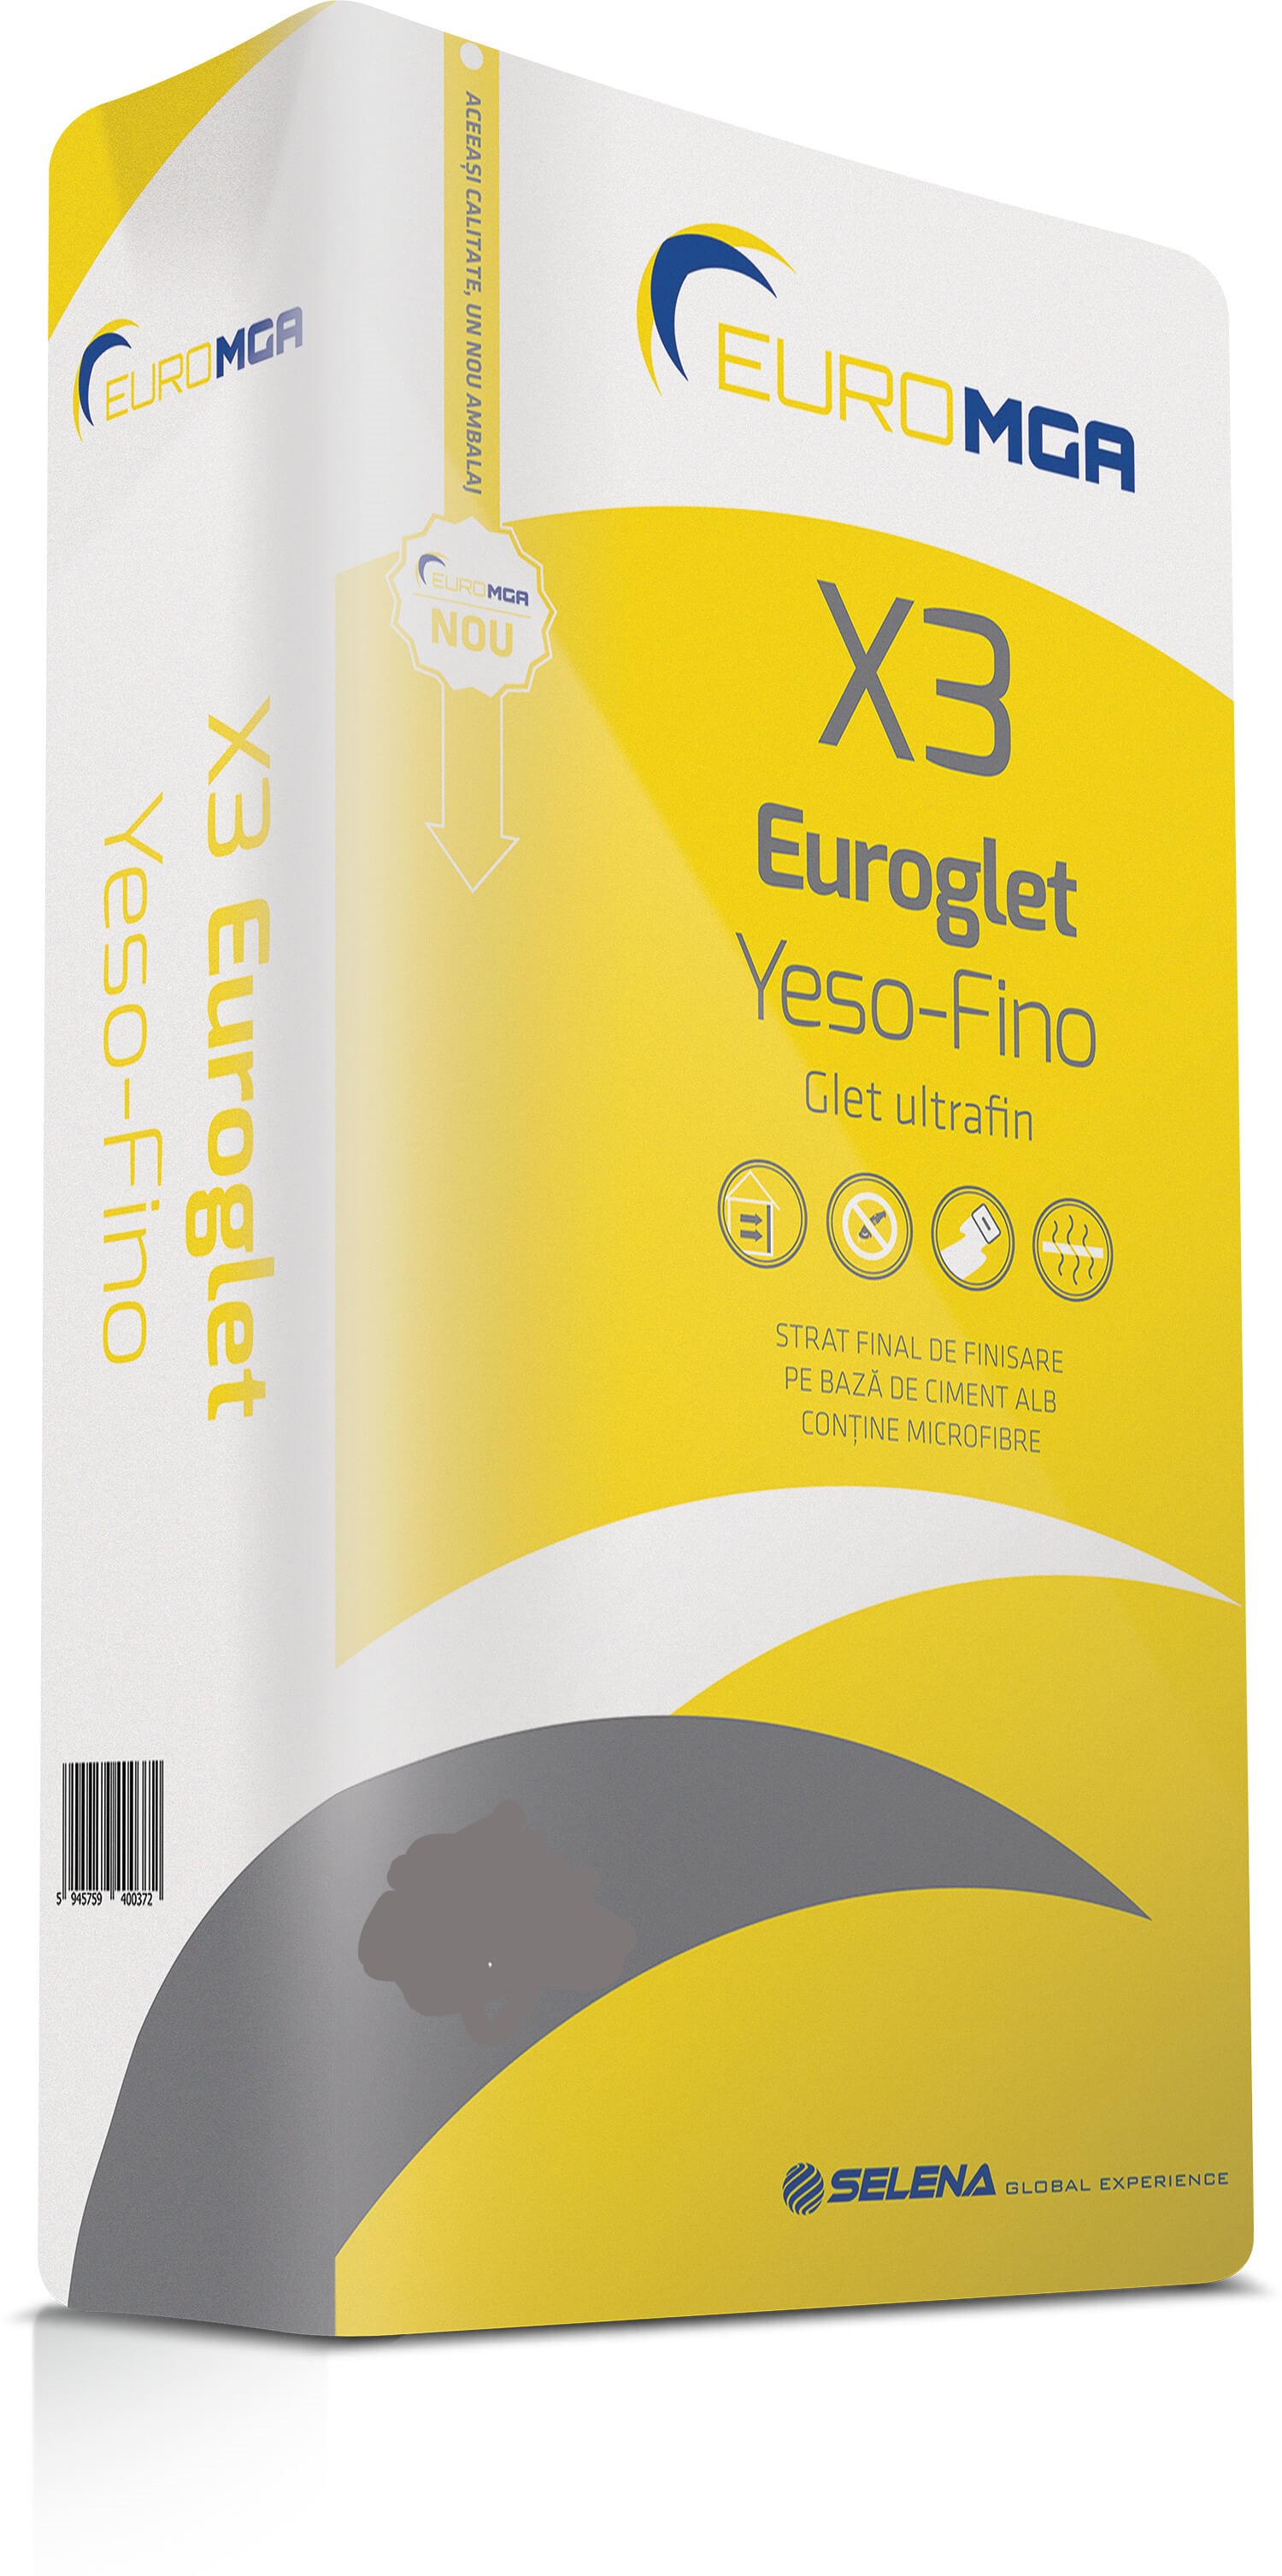 Plasters - Ultra-fine finishing glet X3 Euroglet Yeso-Fino EuroMGA 5 kg, https:maxbau.ro